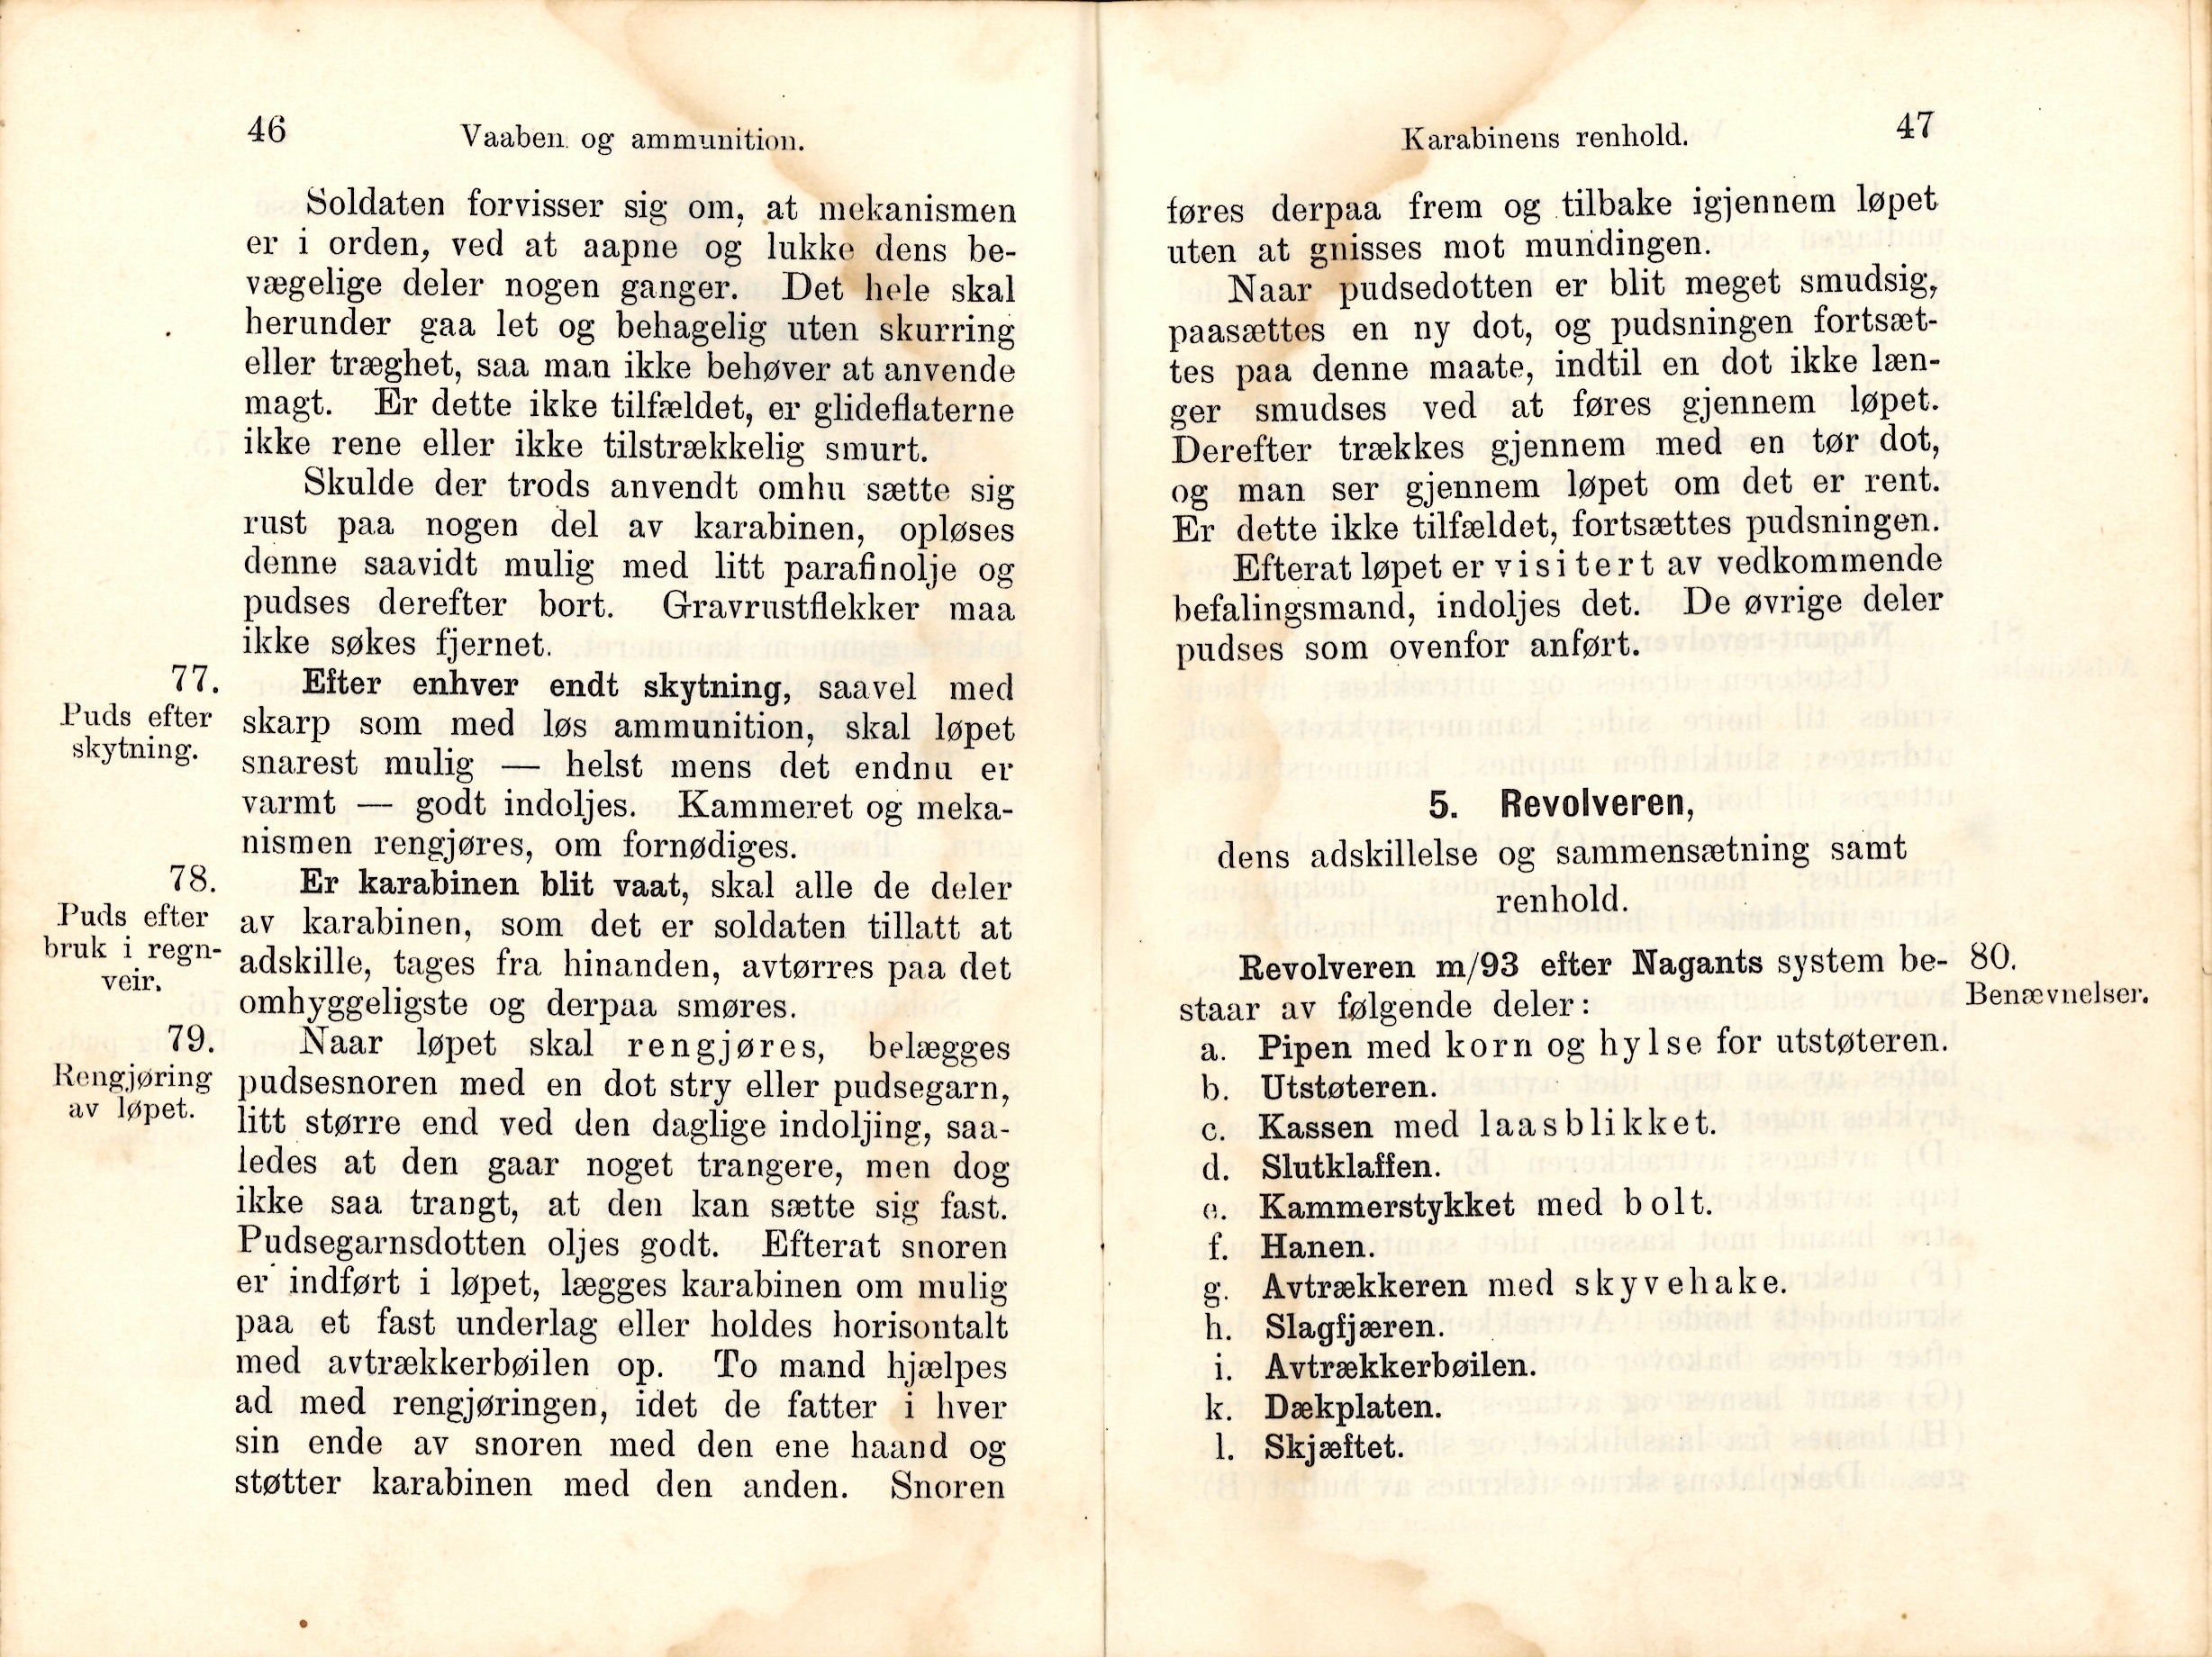 ./doc/reglement/Tren/Haandbog-Trenkorpset-1909-9.jpg